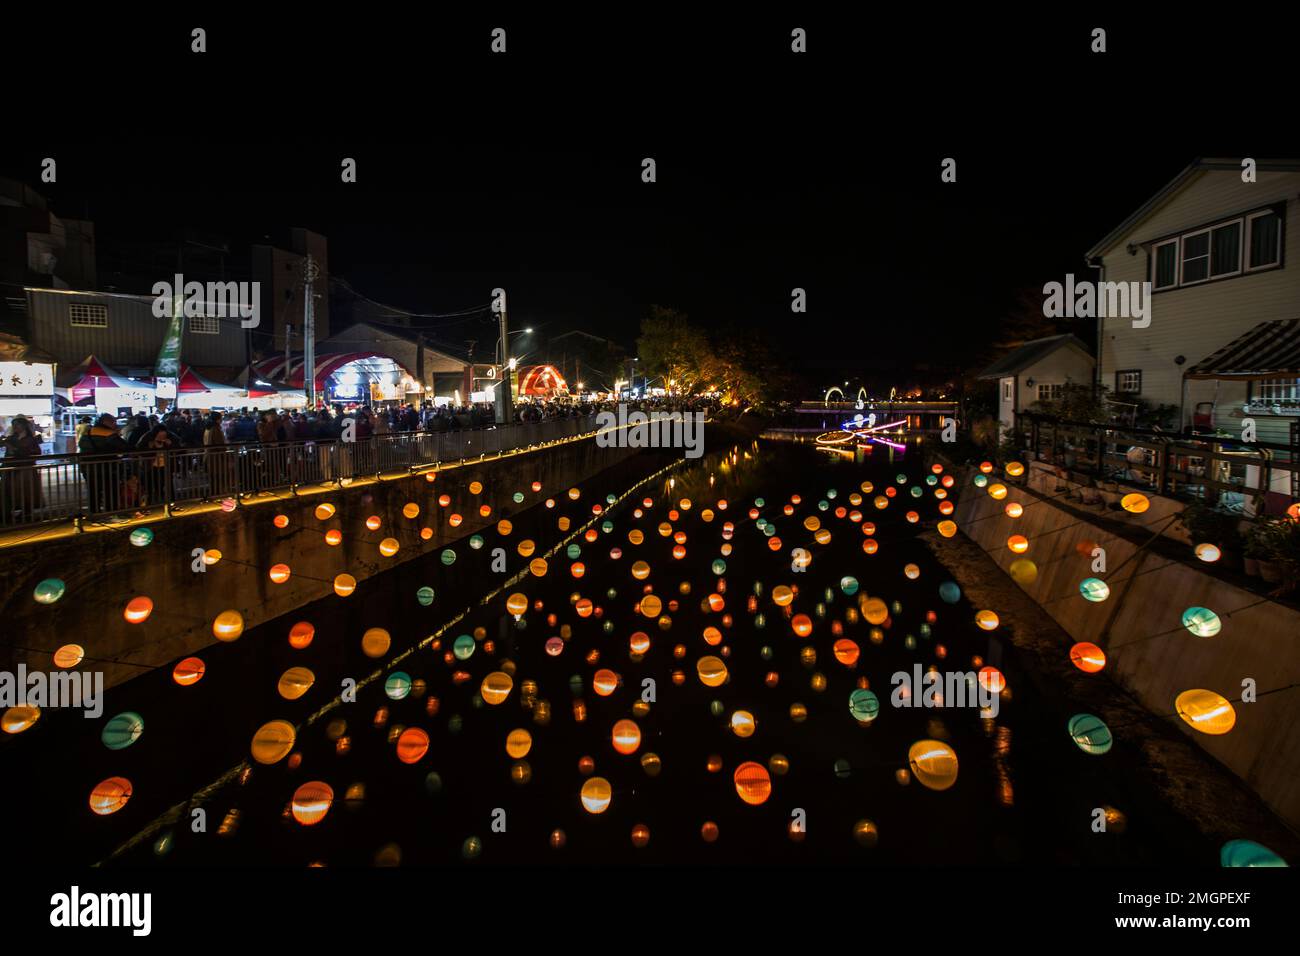 Le festival de lanternes est l'une des célèbres ceremomies de la Fête du nouvel an chinois. Cette image est mise au point dans les bâtiments. Cet endroit s'ouvre sur le wi public Banque D'Images